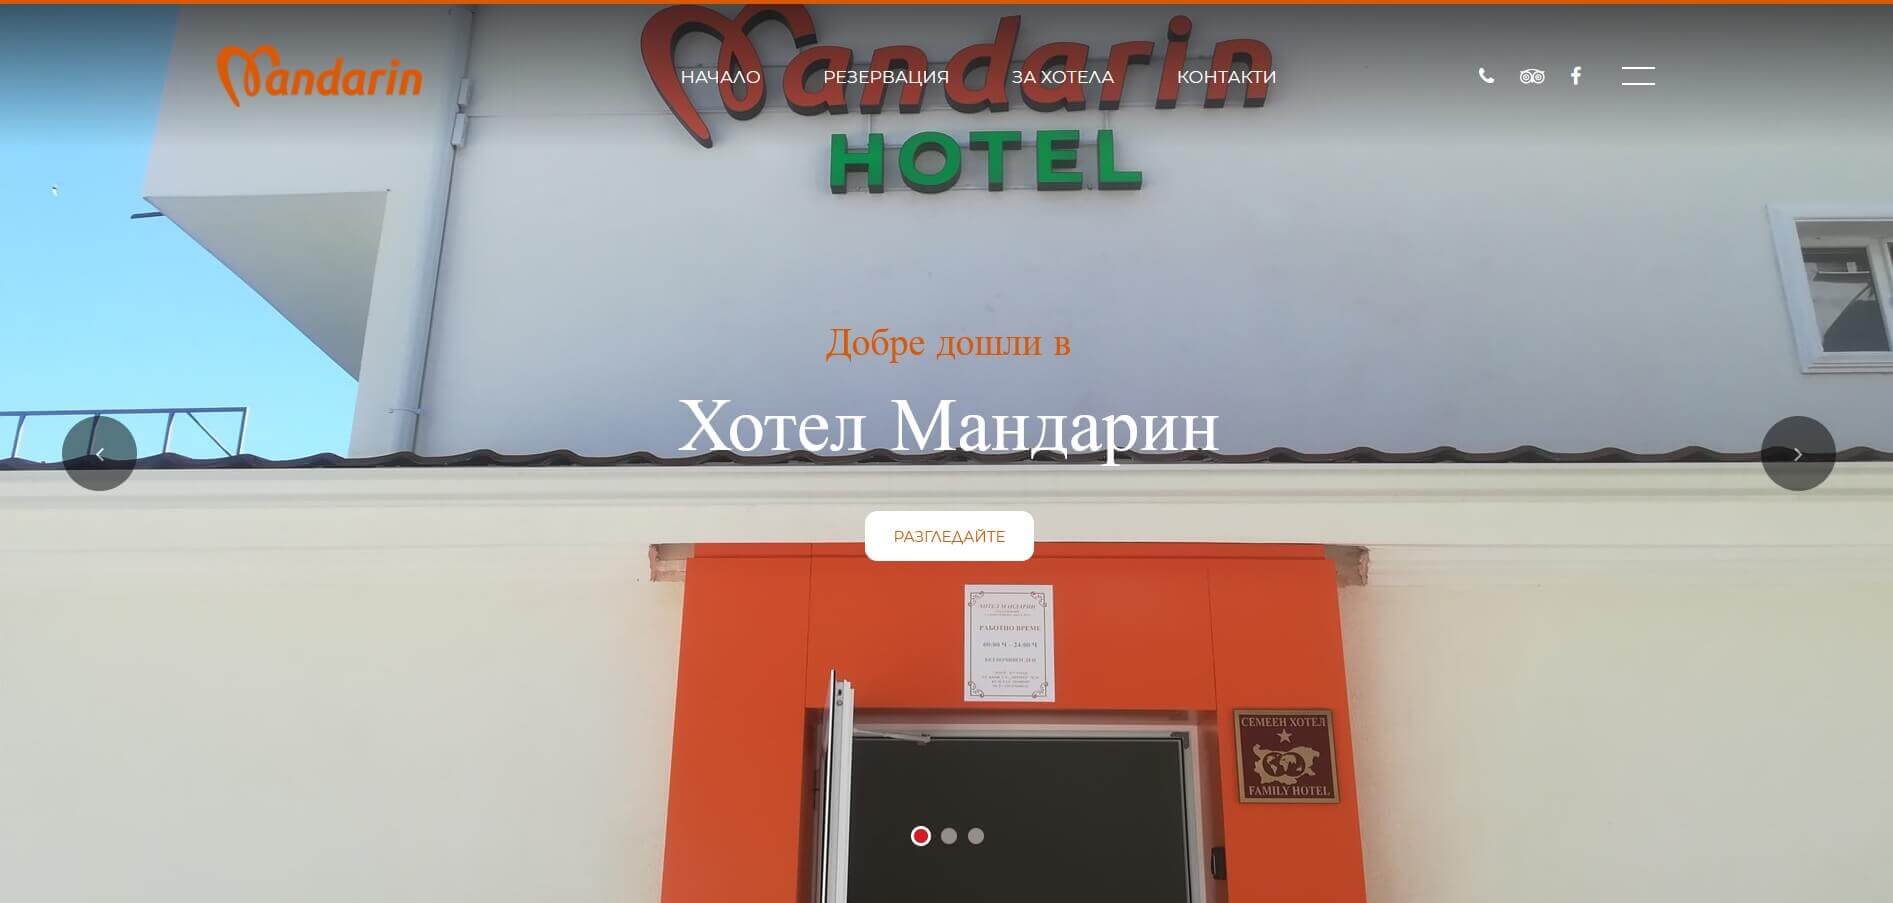 Хотел Мандарин - Евтини нощувки в Пловдив